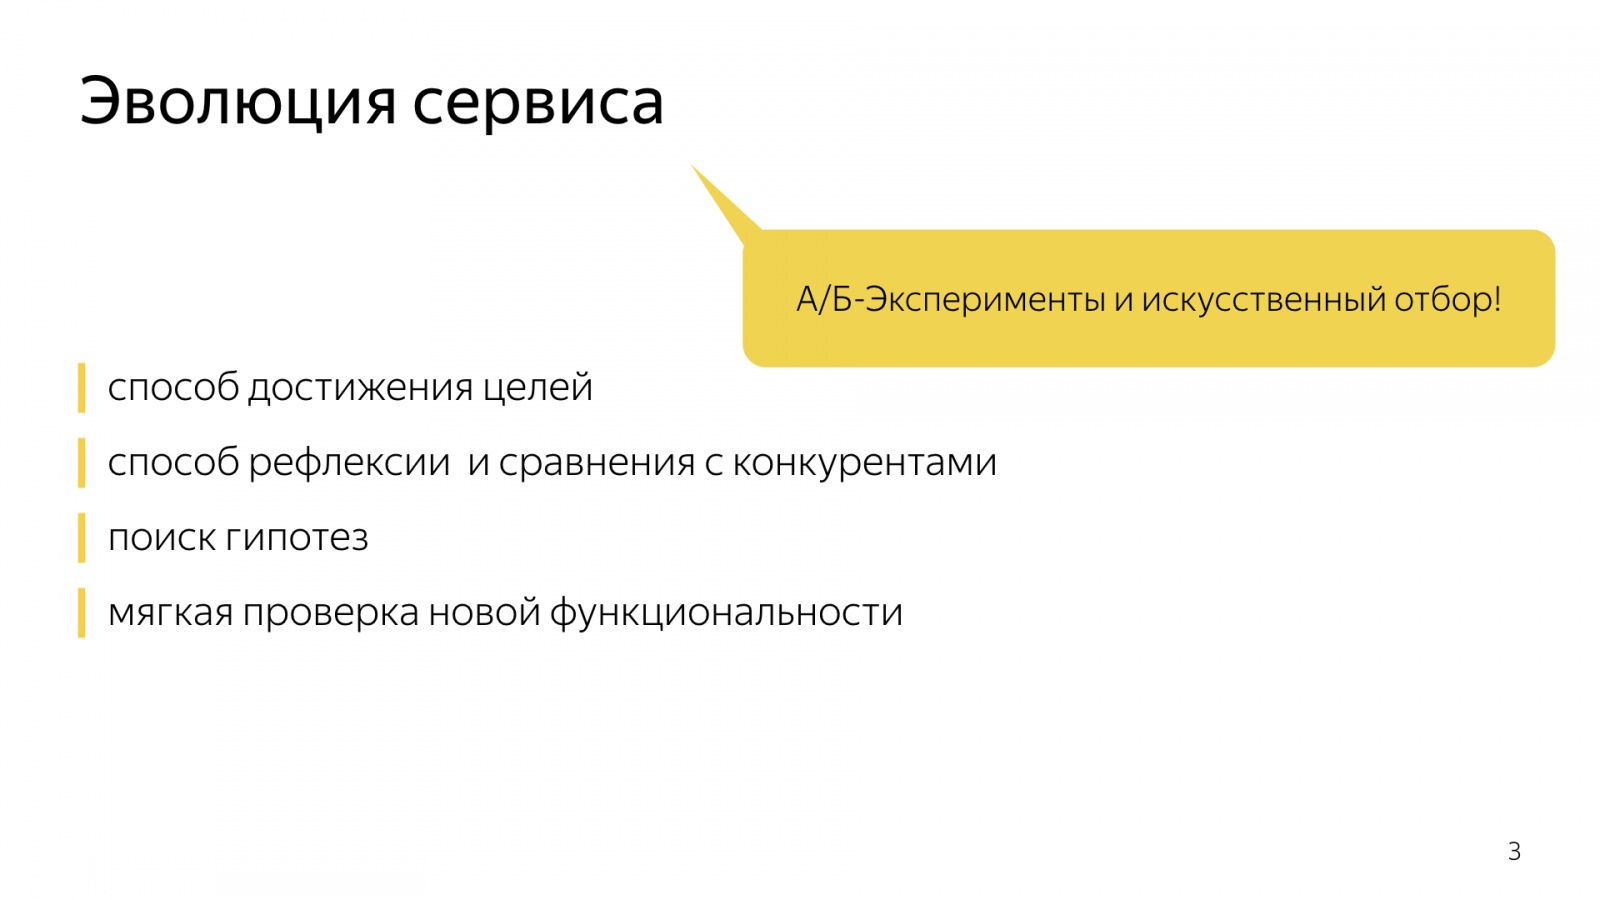 Инфраструктура А-Б-экспериментов в большом Поиске. Доклад Яндекса - 4